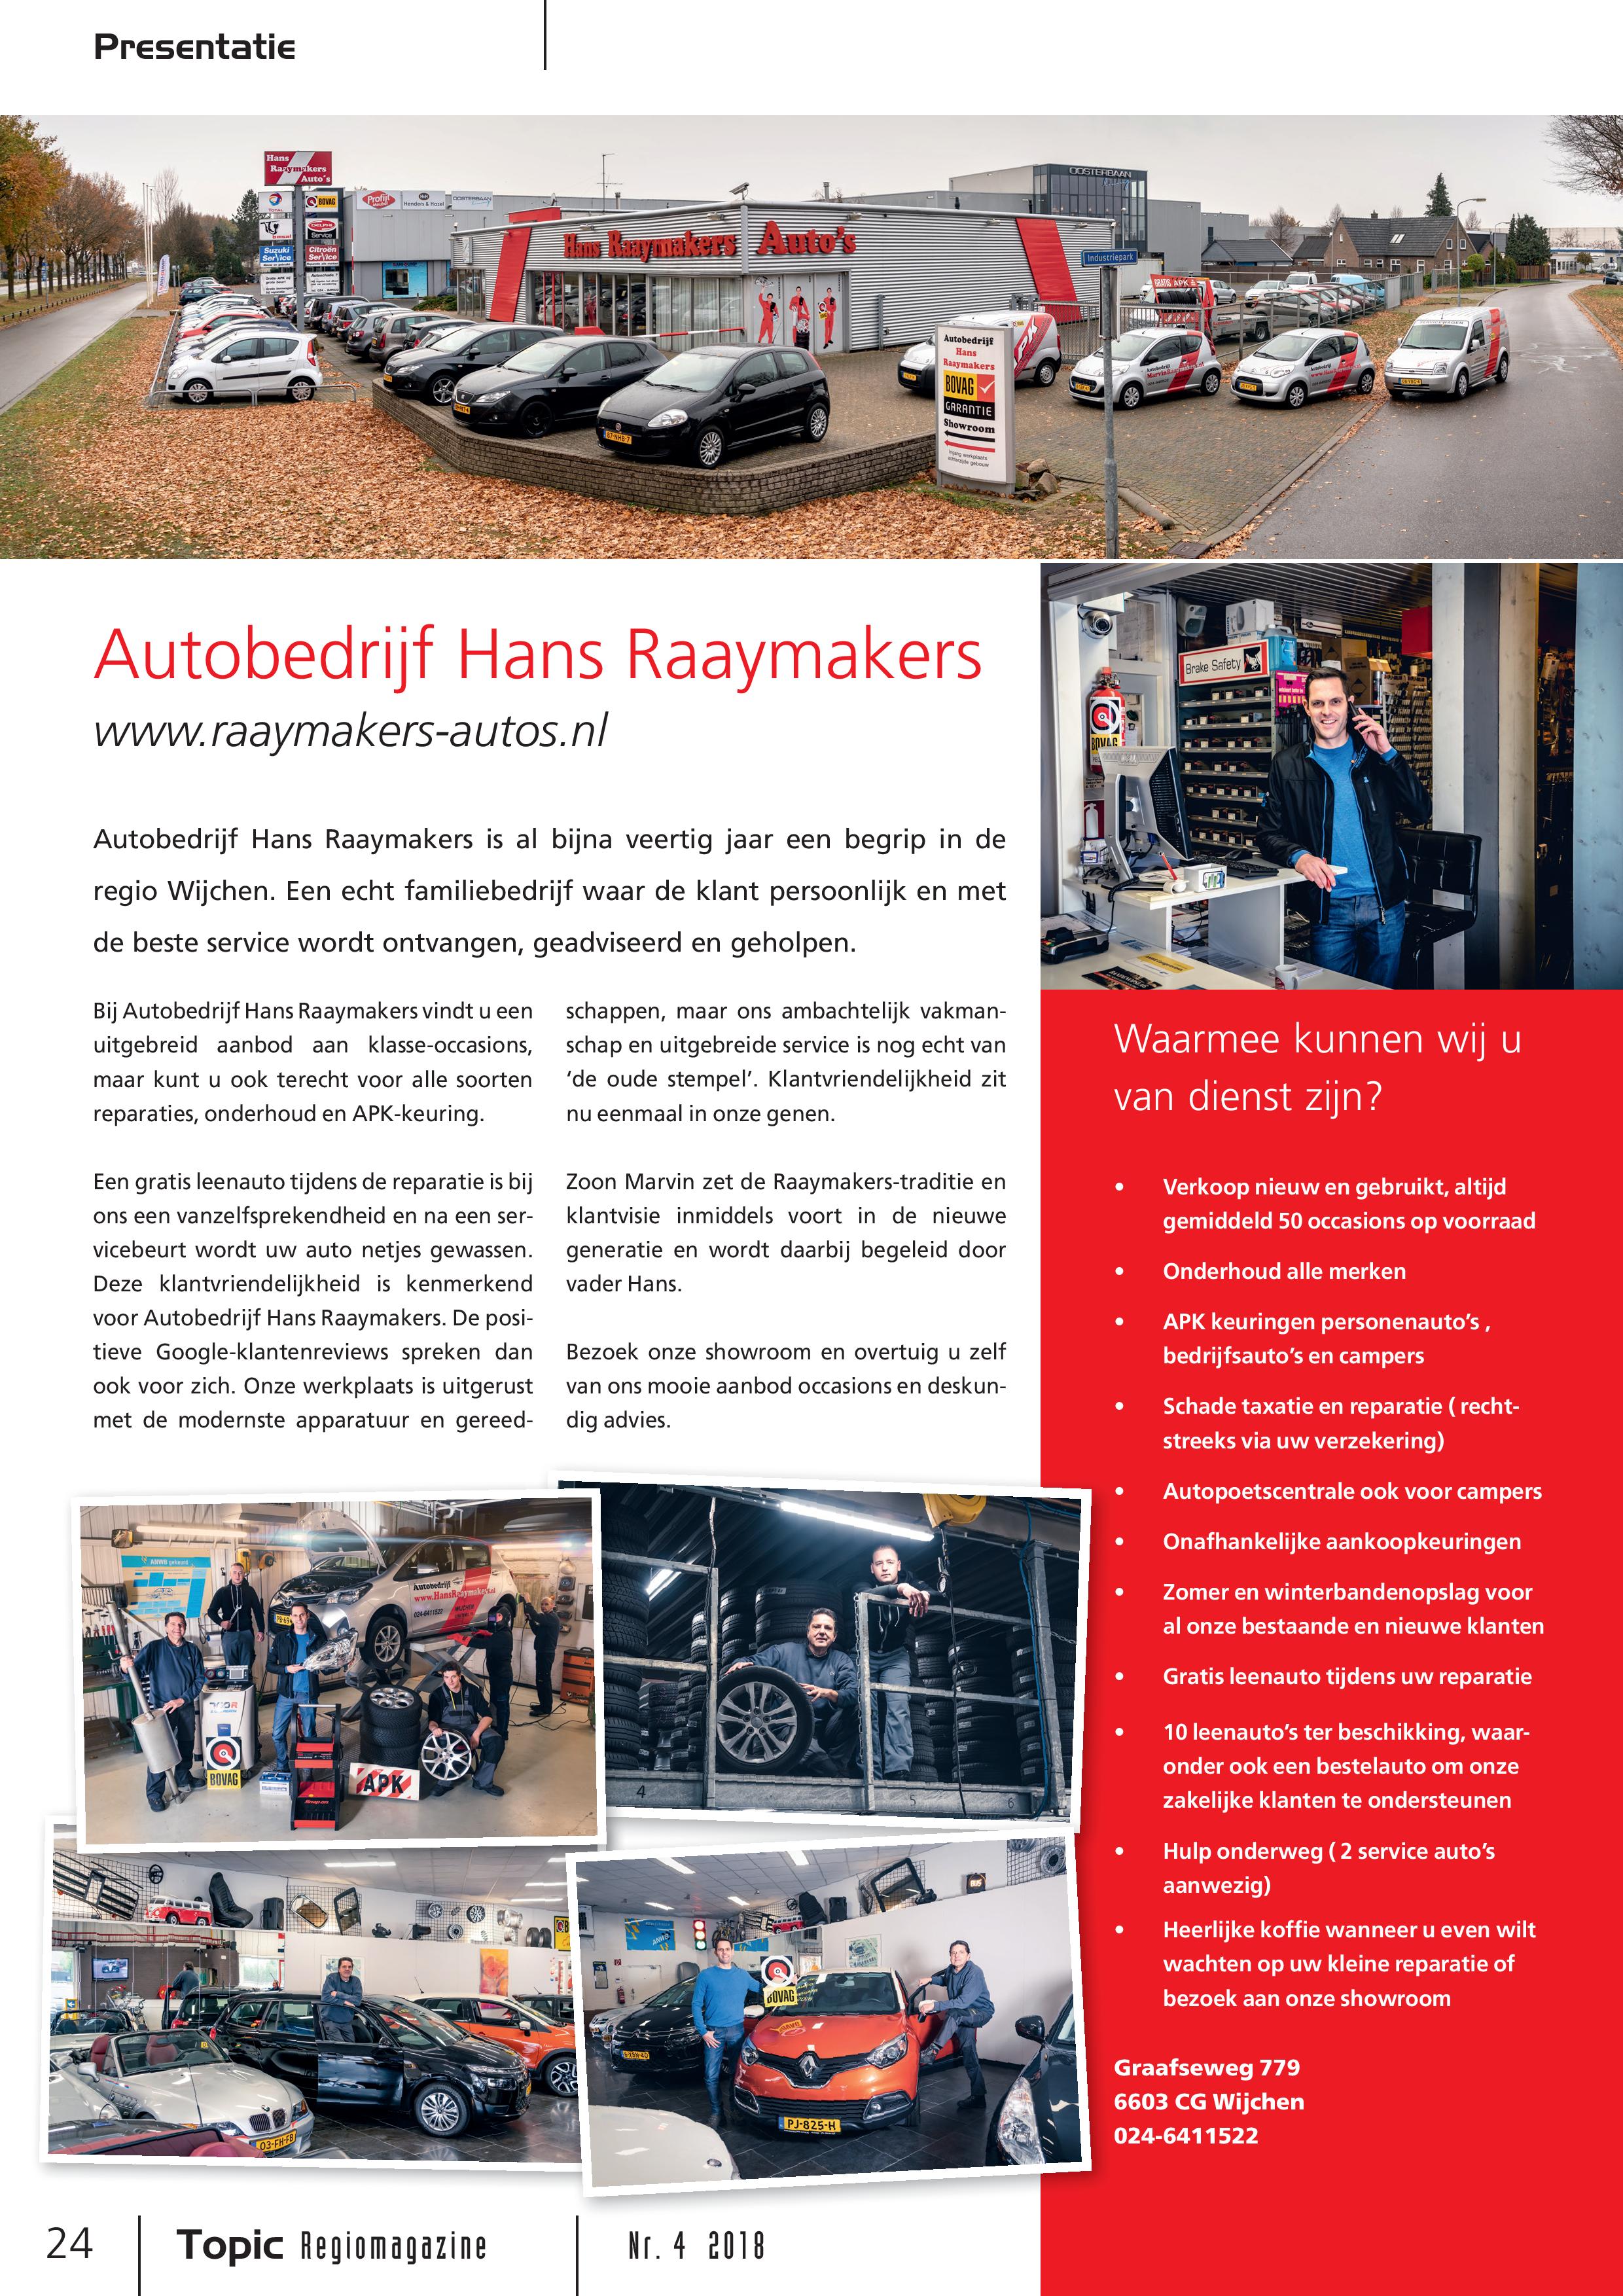 Presentatie Autobedrijf Hans Raaymakers Wijchen